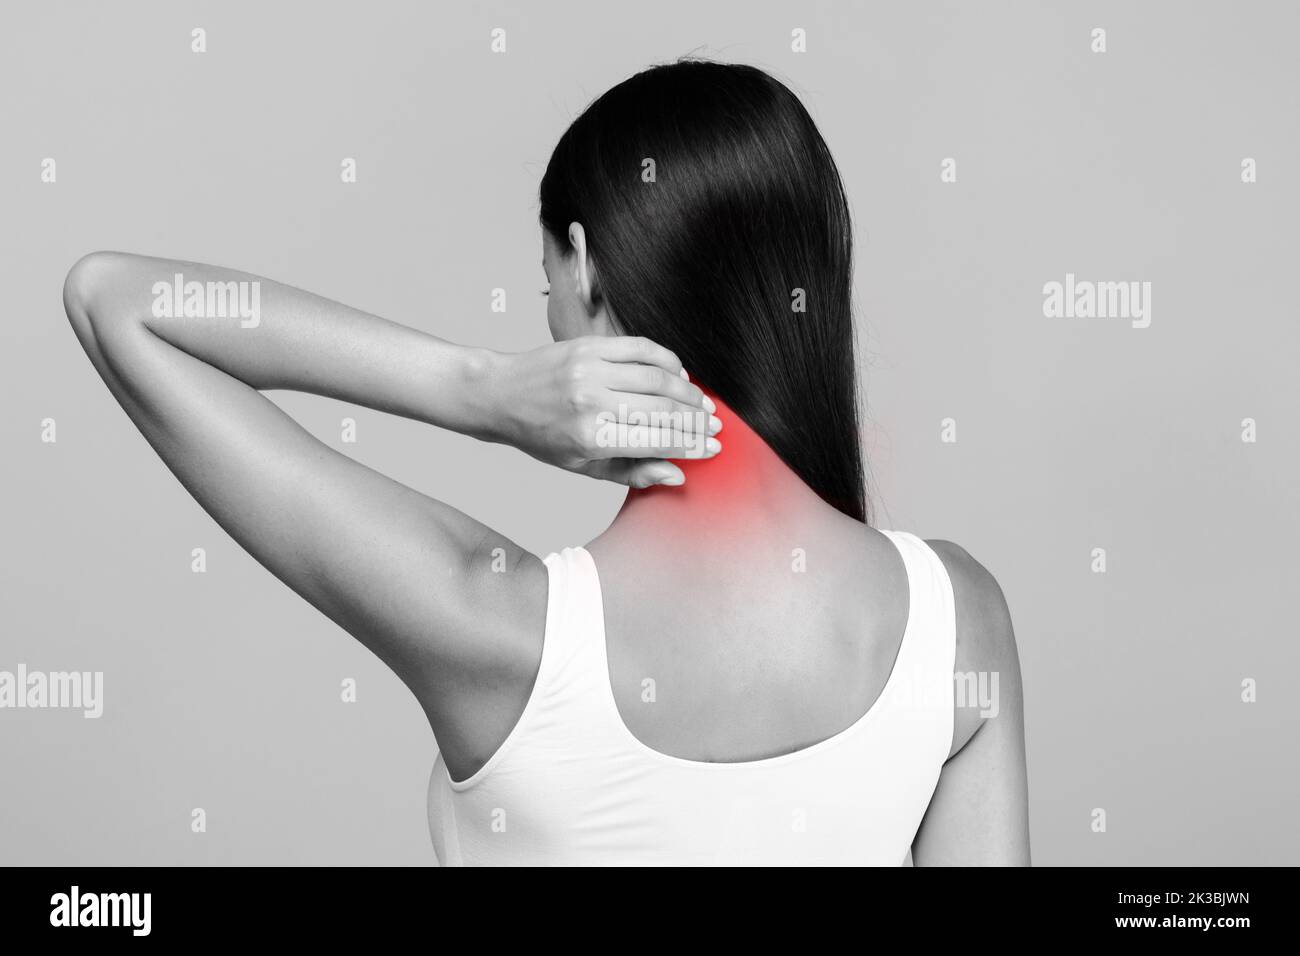 Douleur au cou stress et tension musculaires. Femme méconnaissable en haut massant rouge mal de cou, vue arrière, photo noir et blanc Banque D'Images